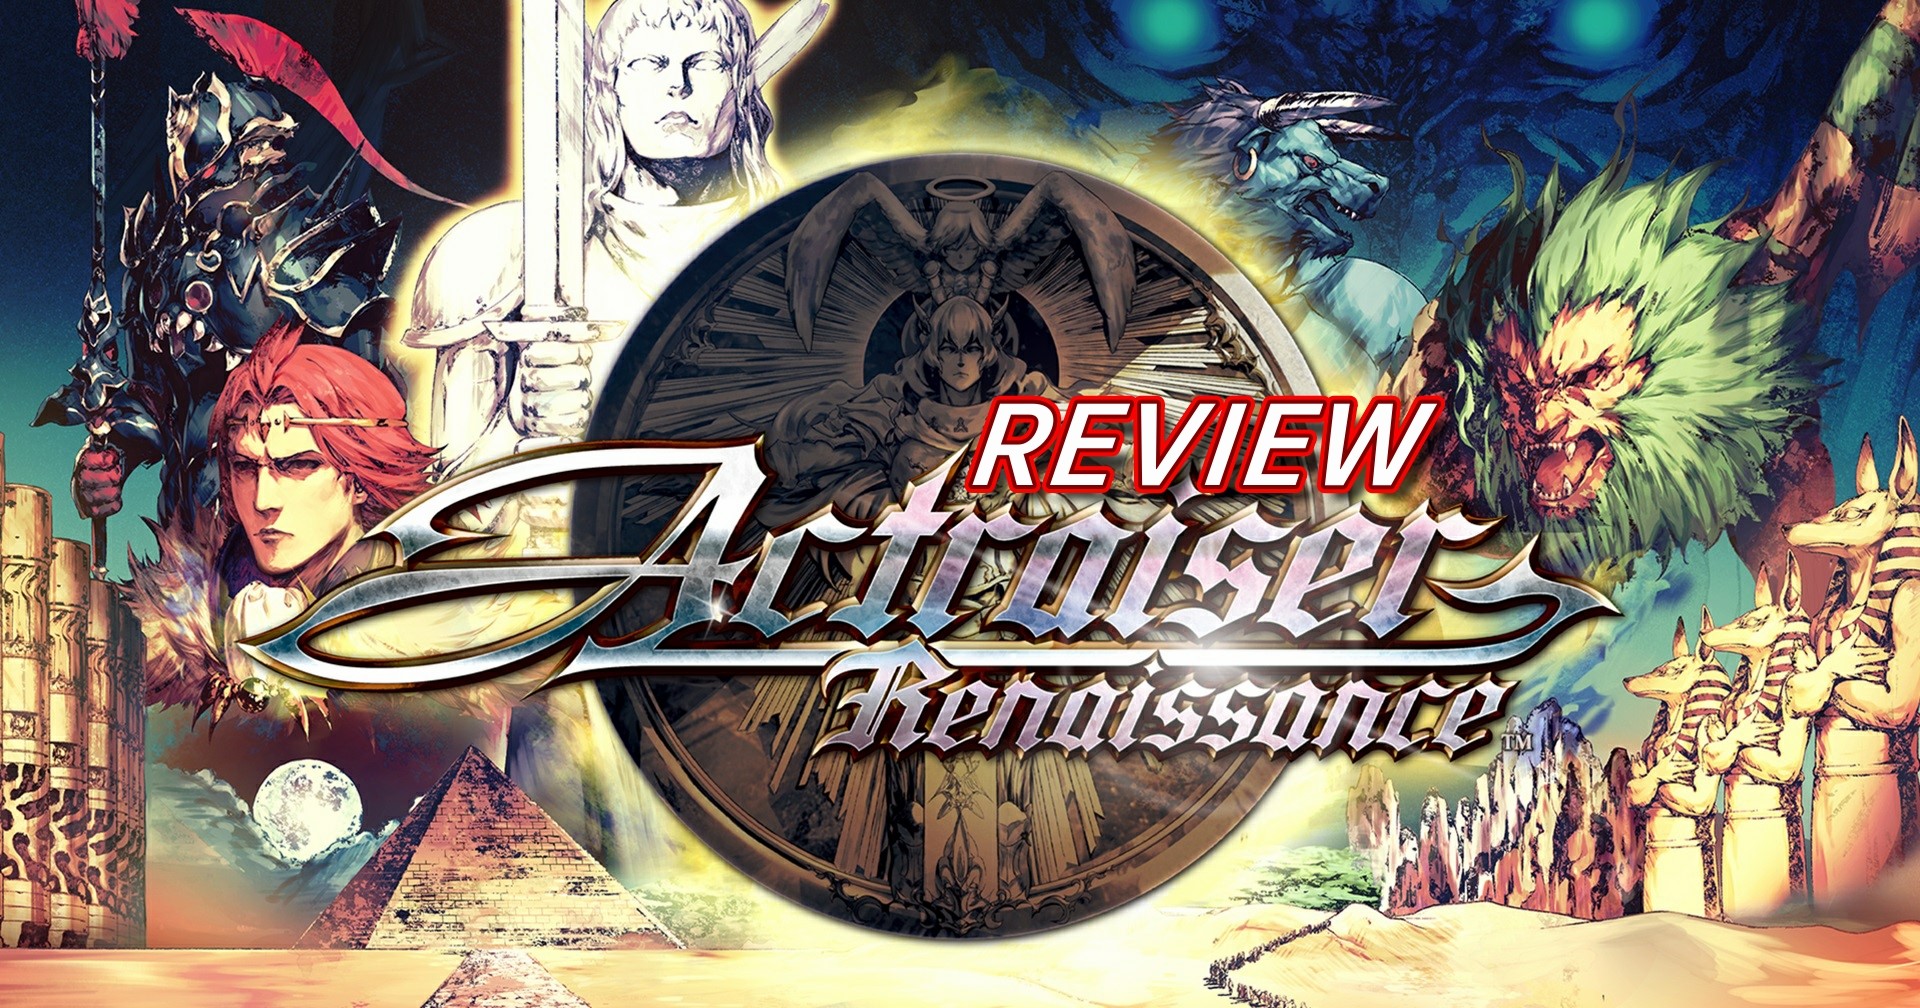 รีวิวเกม Actraiser Renaissance รีเมกตำนาน Simcity ฉบับรวมร่างกับเกมแอ็กชัน